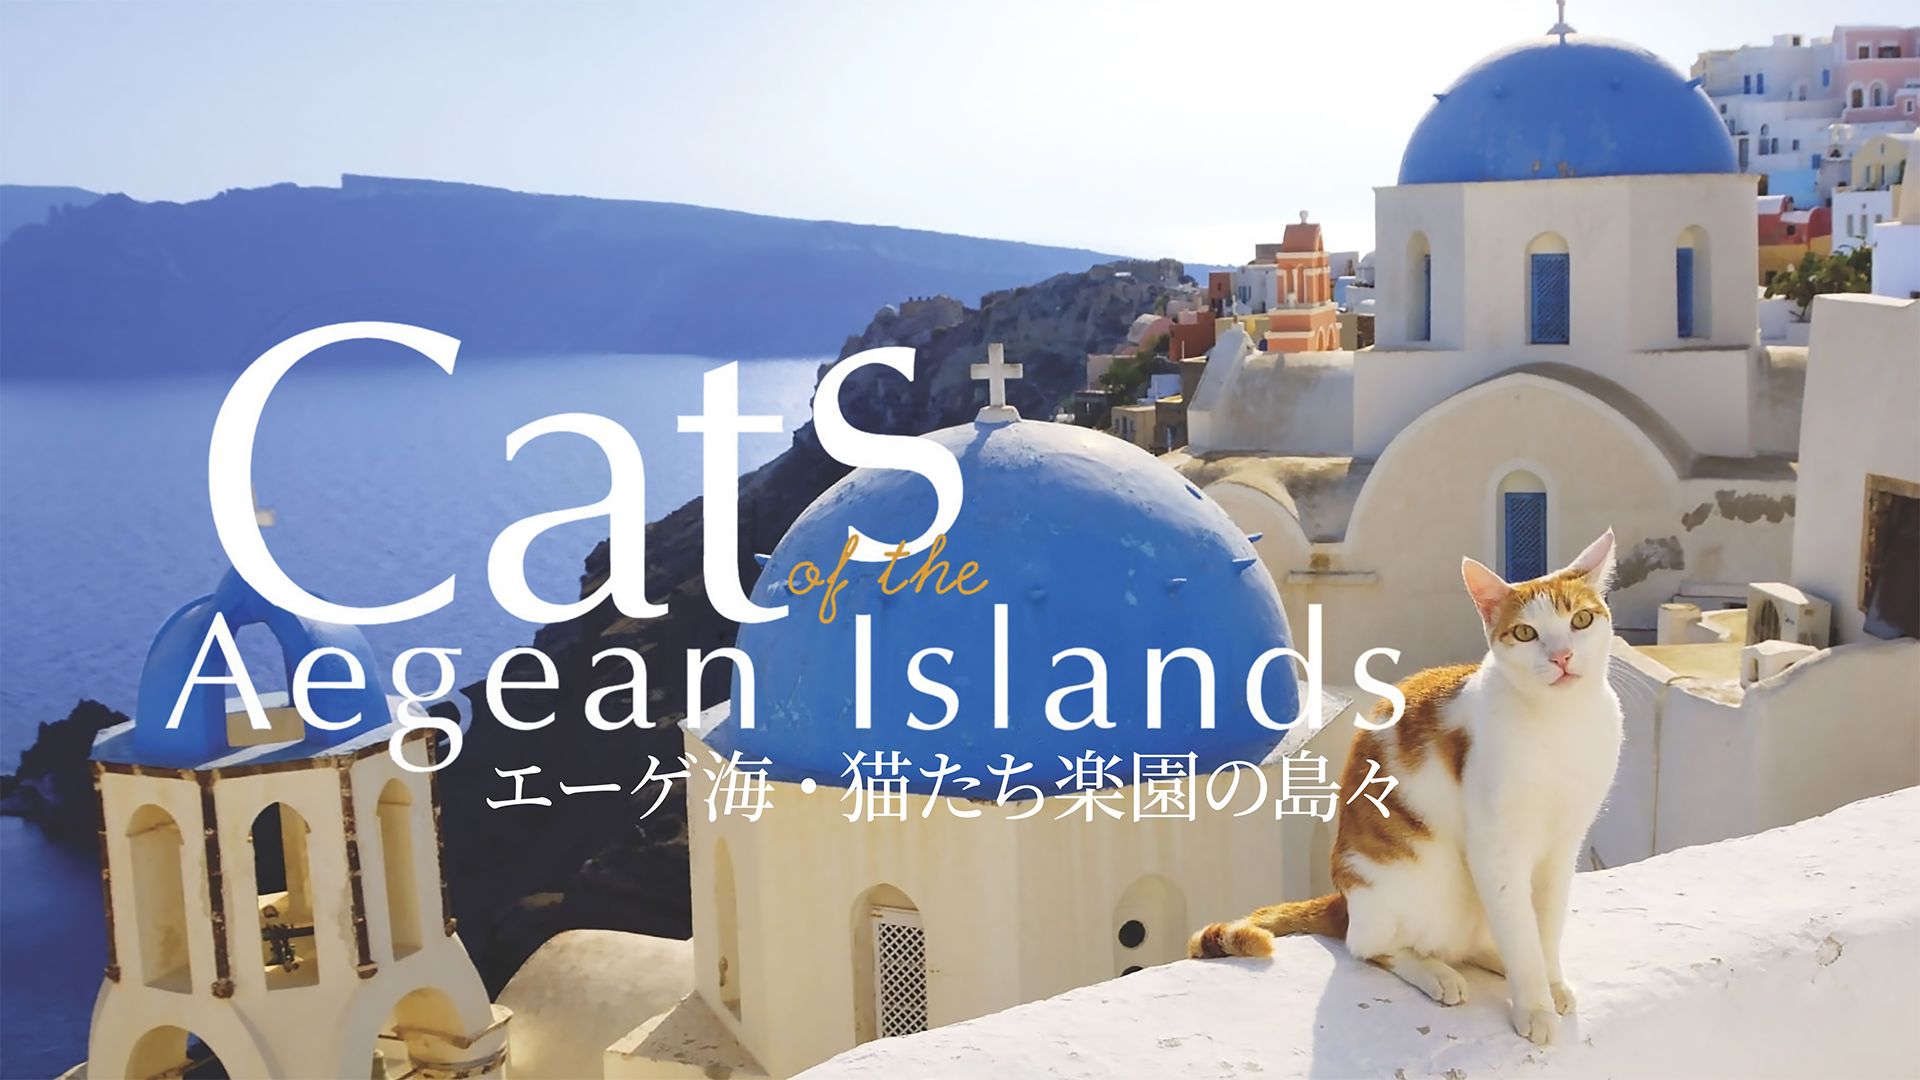 エーゲ海・猫たち楽園の島々 Cats of the Aegean Islands